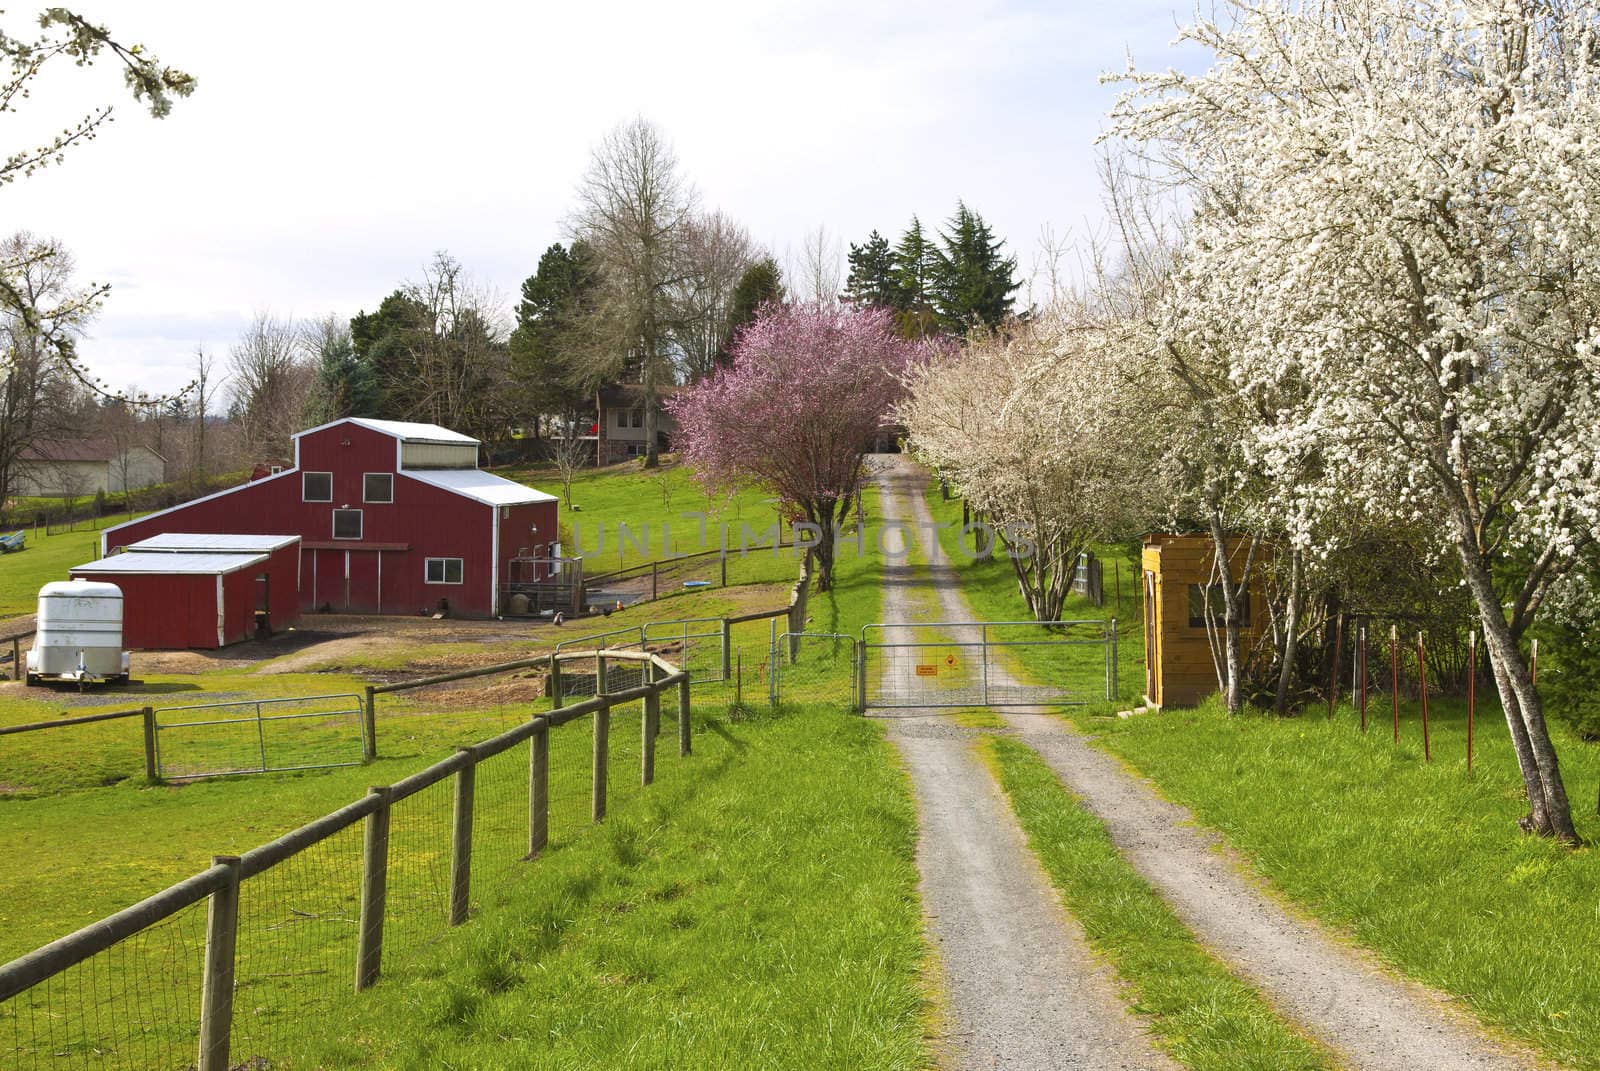 Family farm in Spring in rural Oregon.